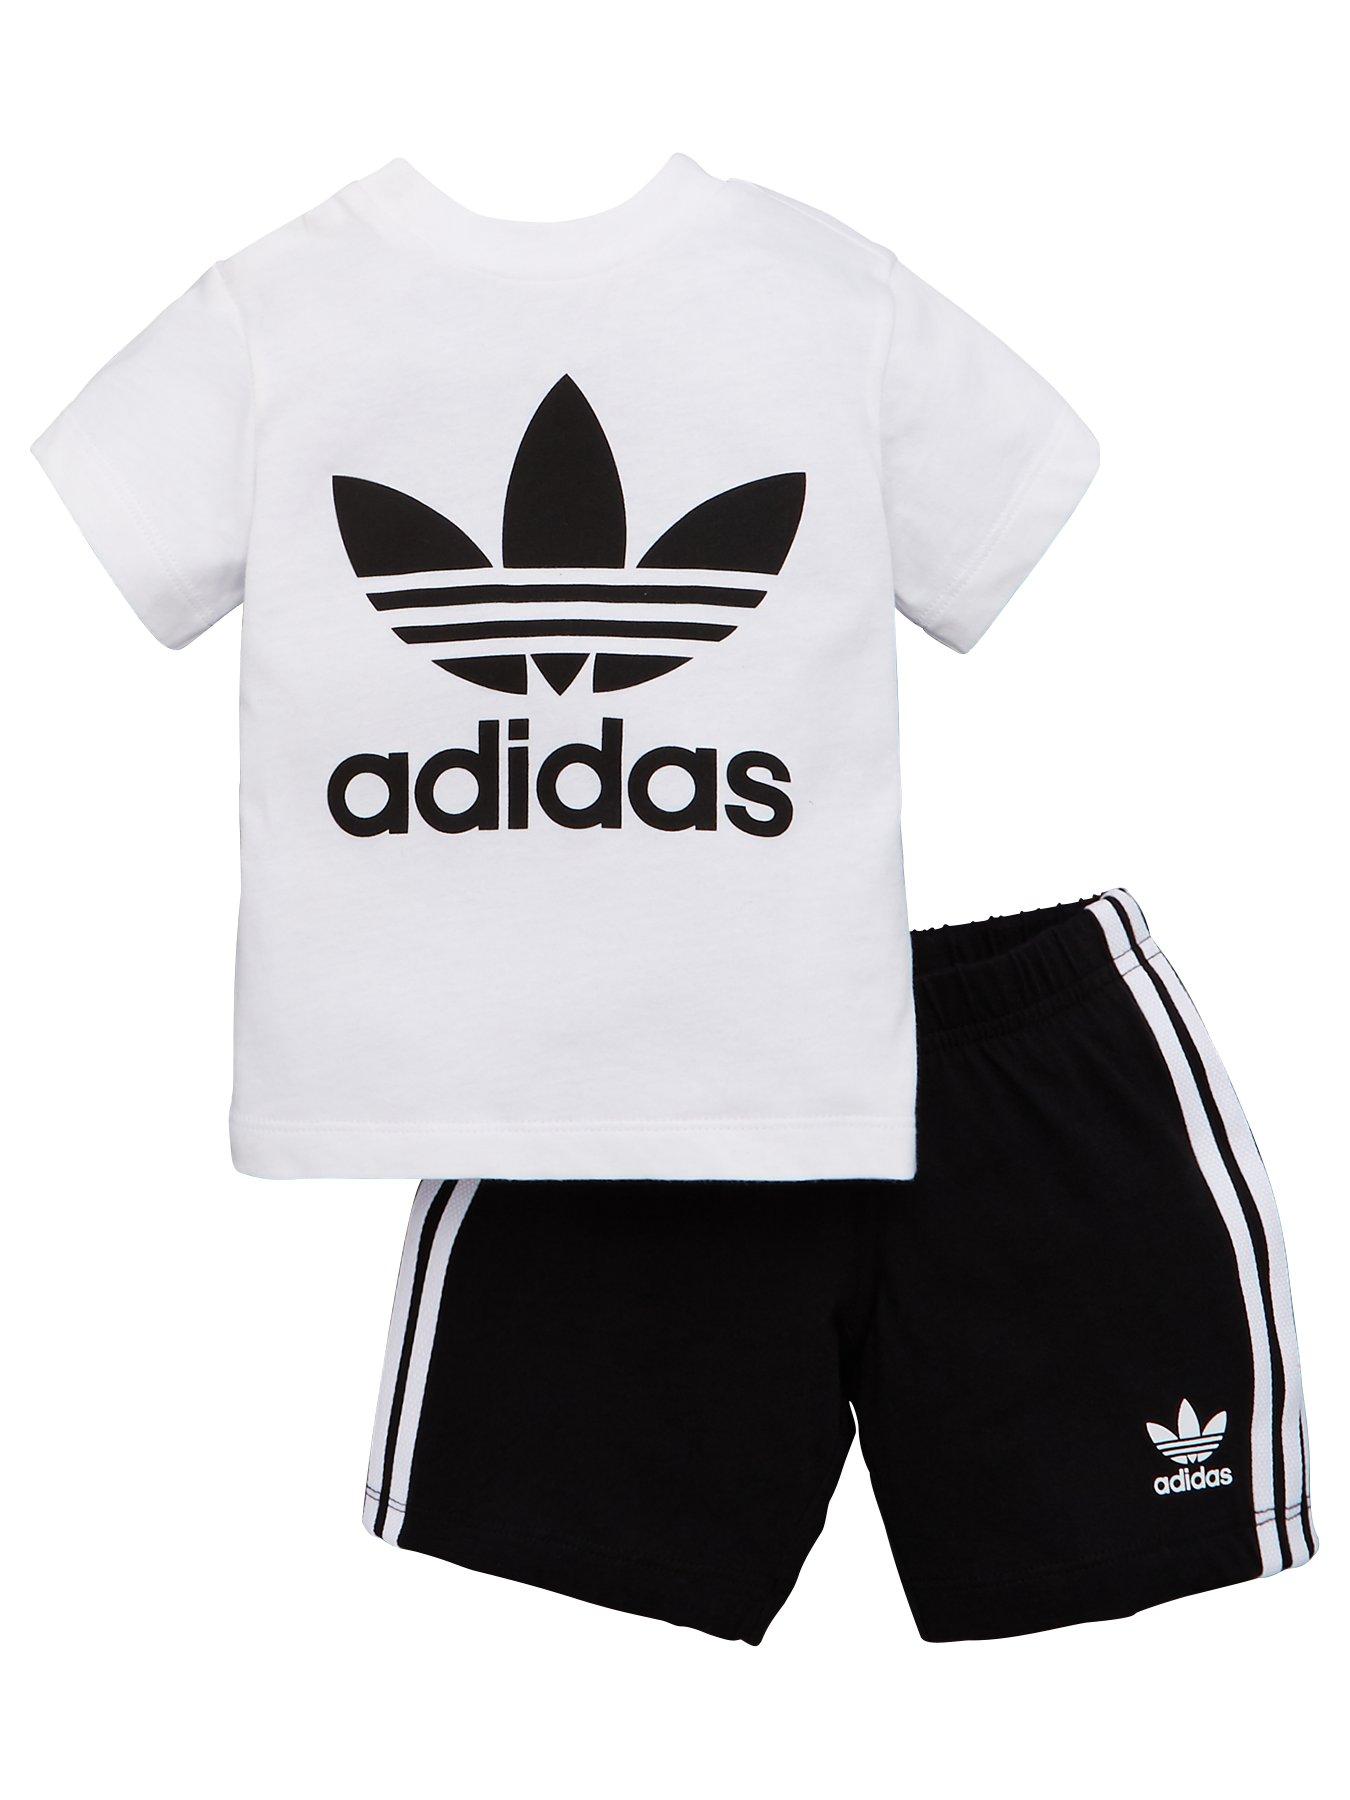 adidas Originals Shorts \u0026 T-shirt Set 